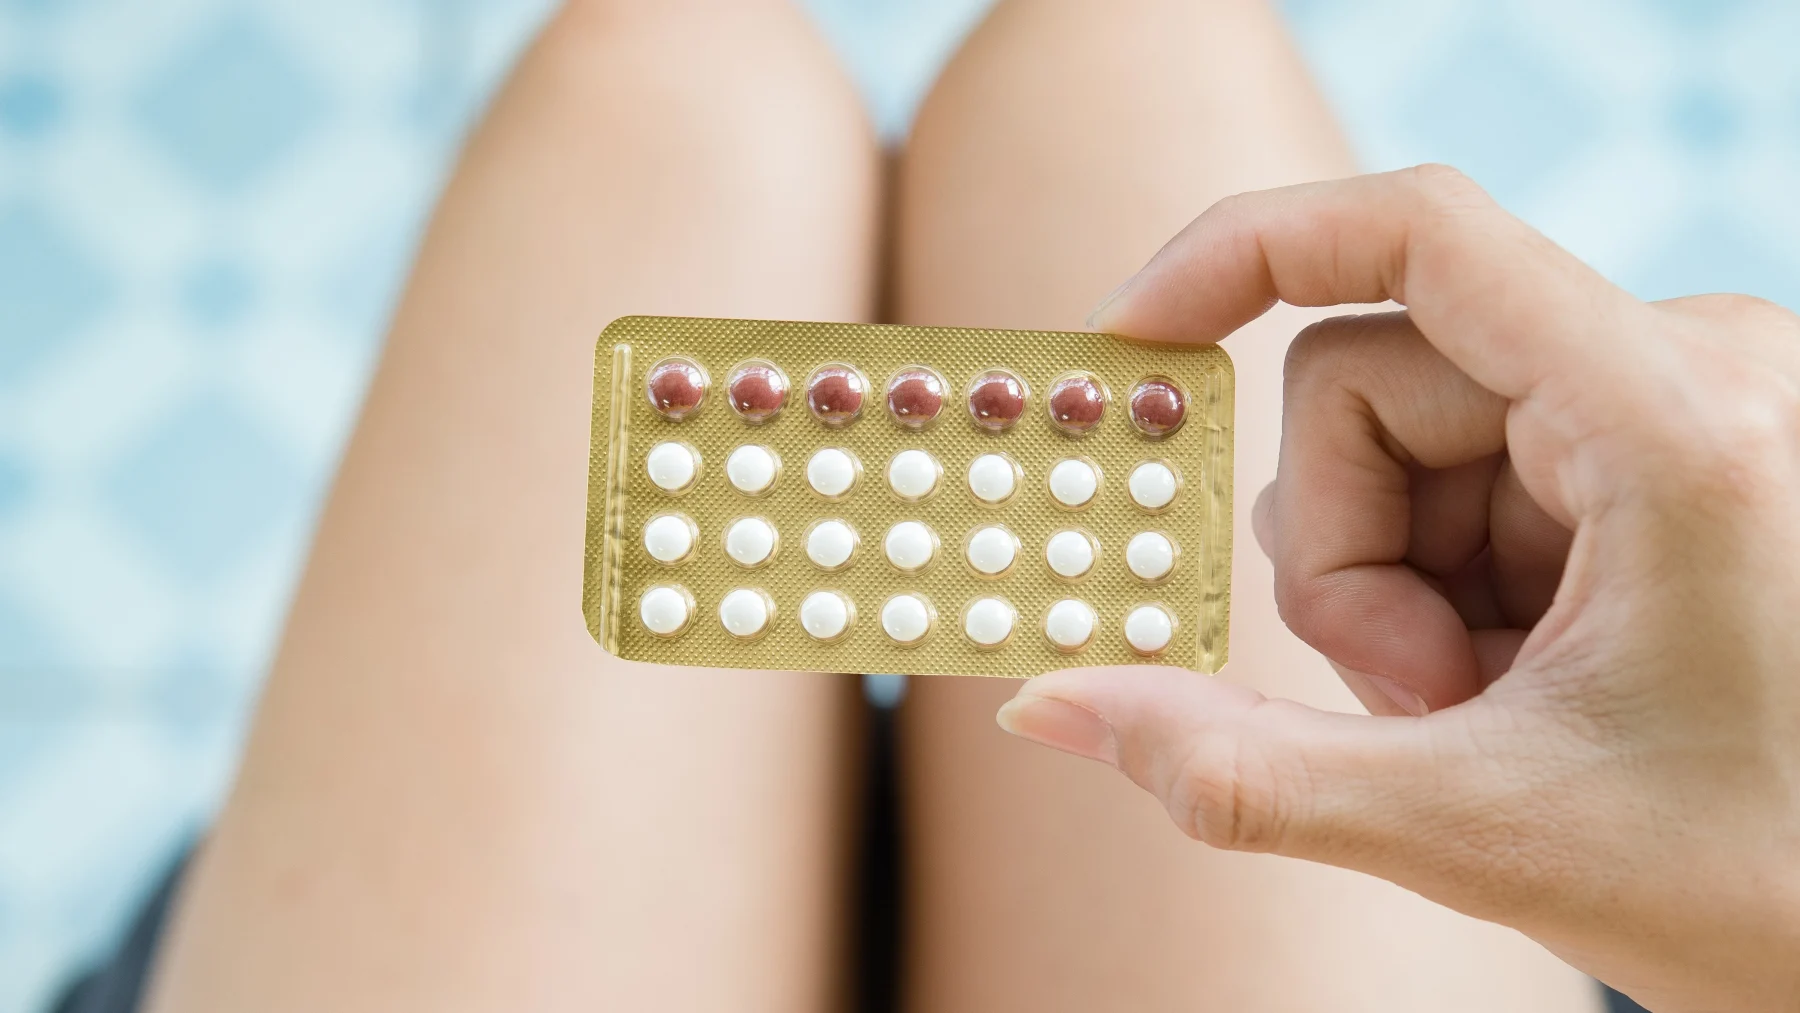 Meisje houdt de anticonceptiepil vast